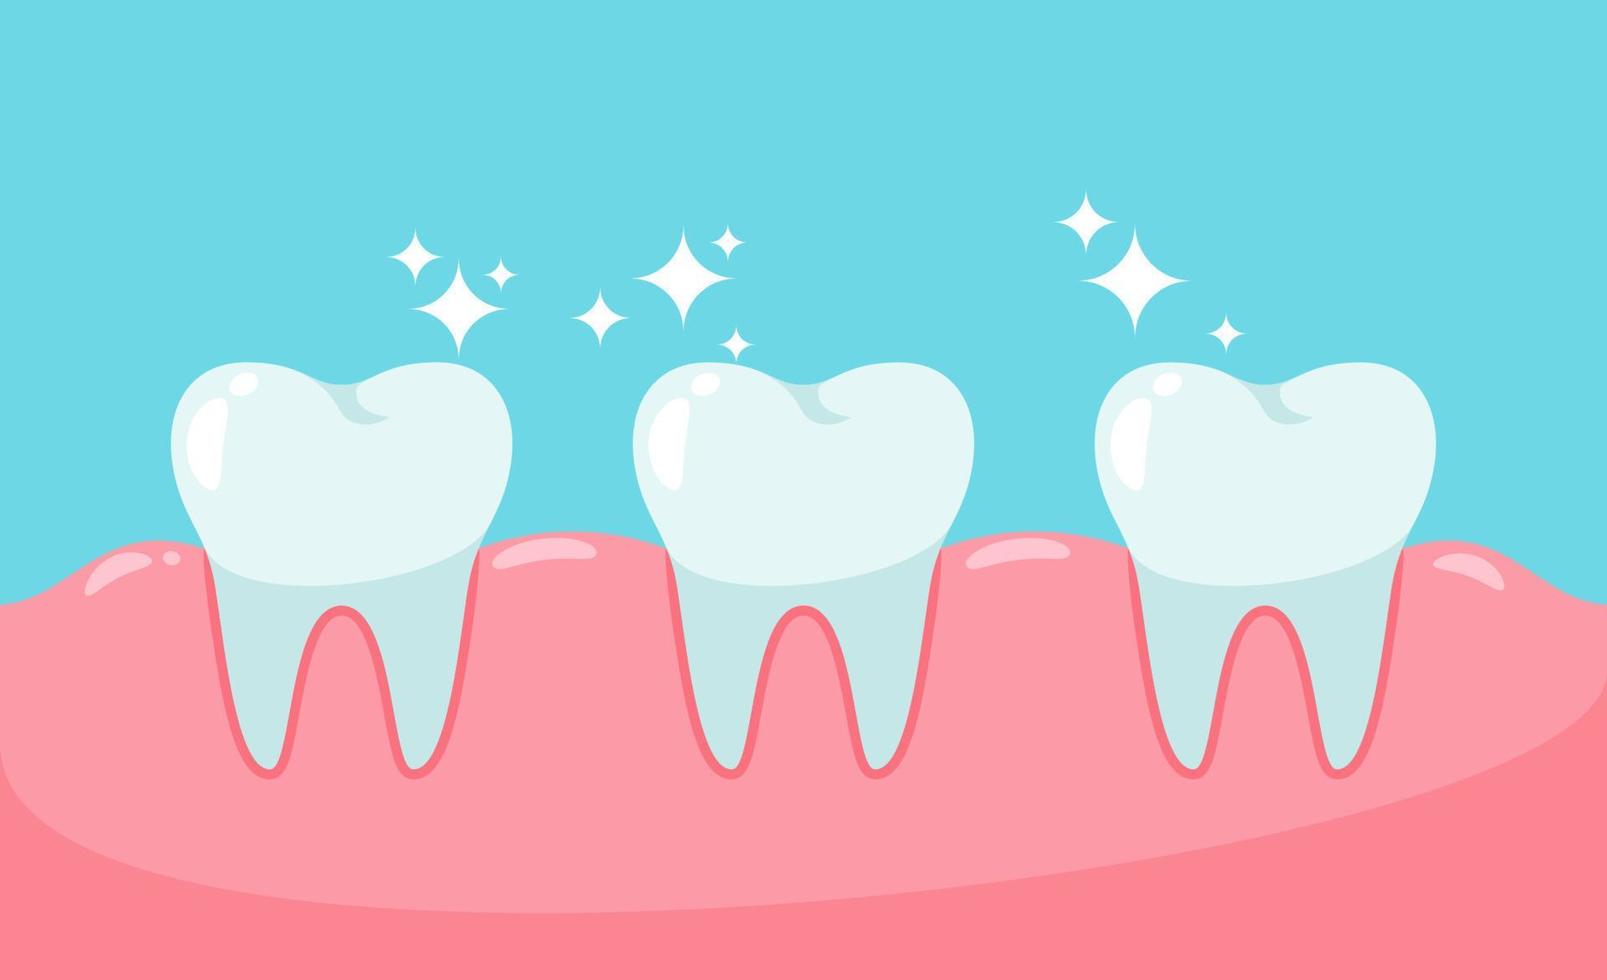 gesunde Zähne und Zahnfleisch. Zahngesundheitskonzept. vektor